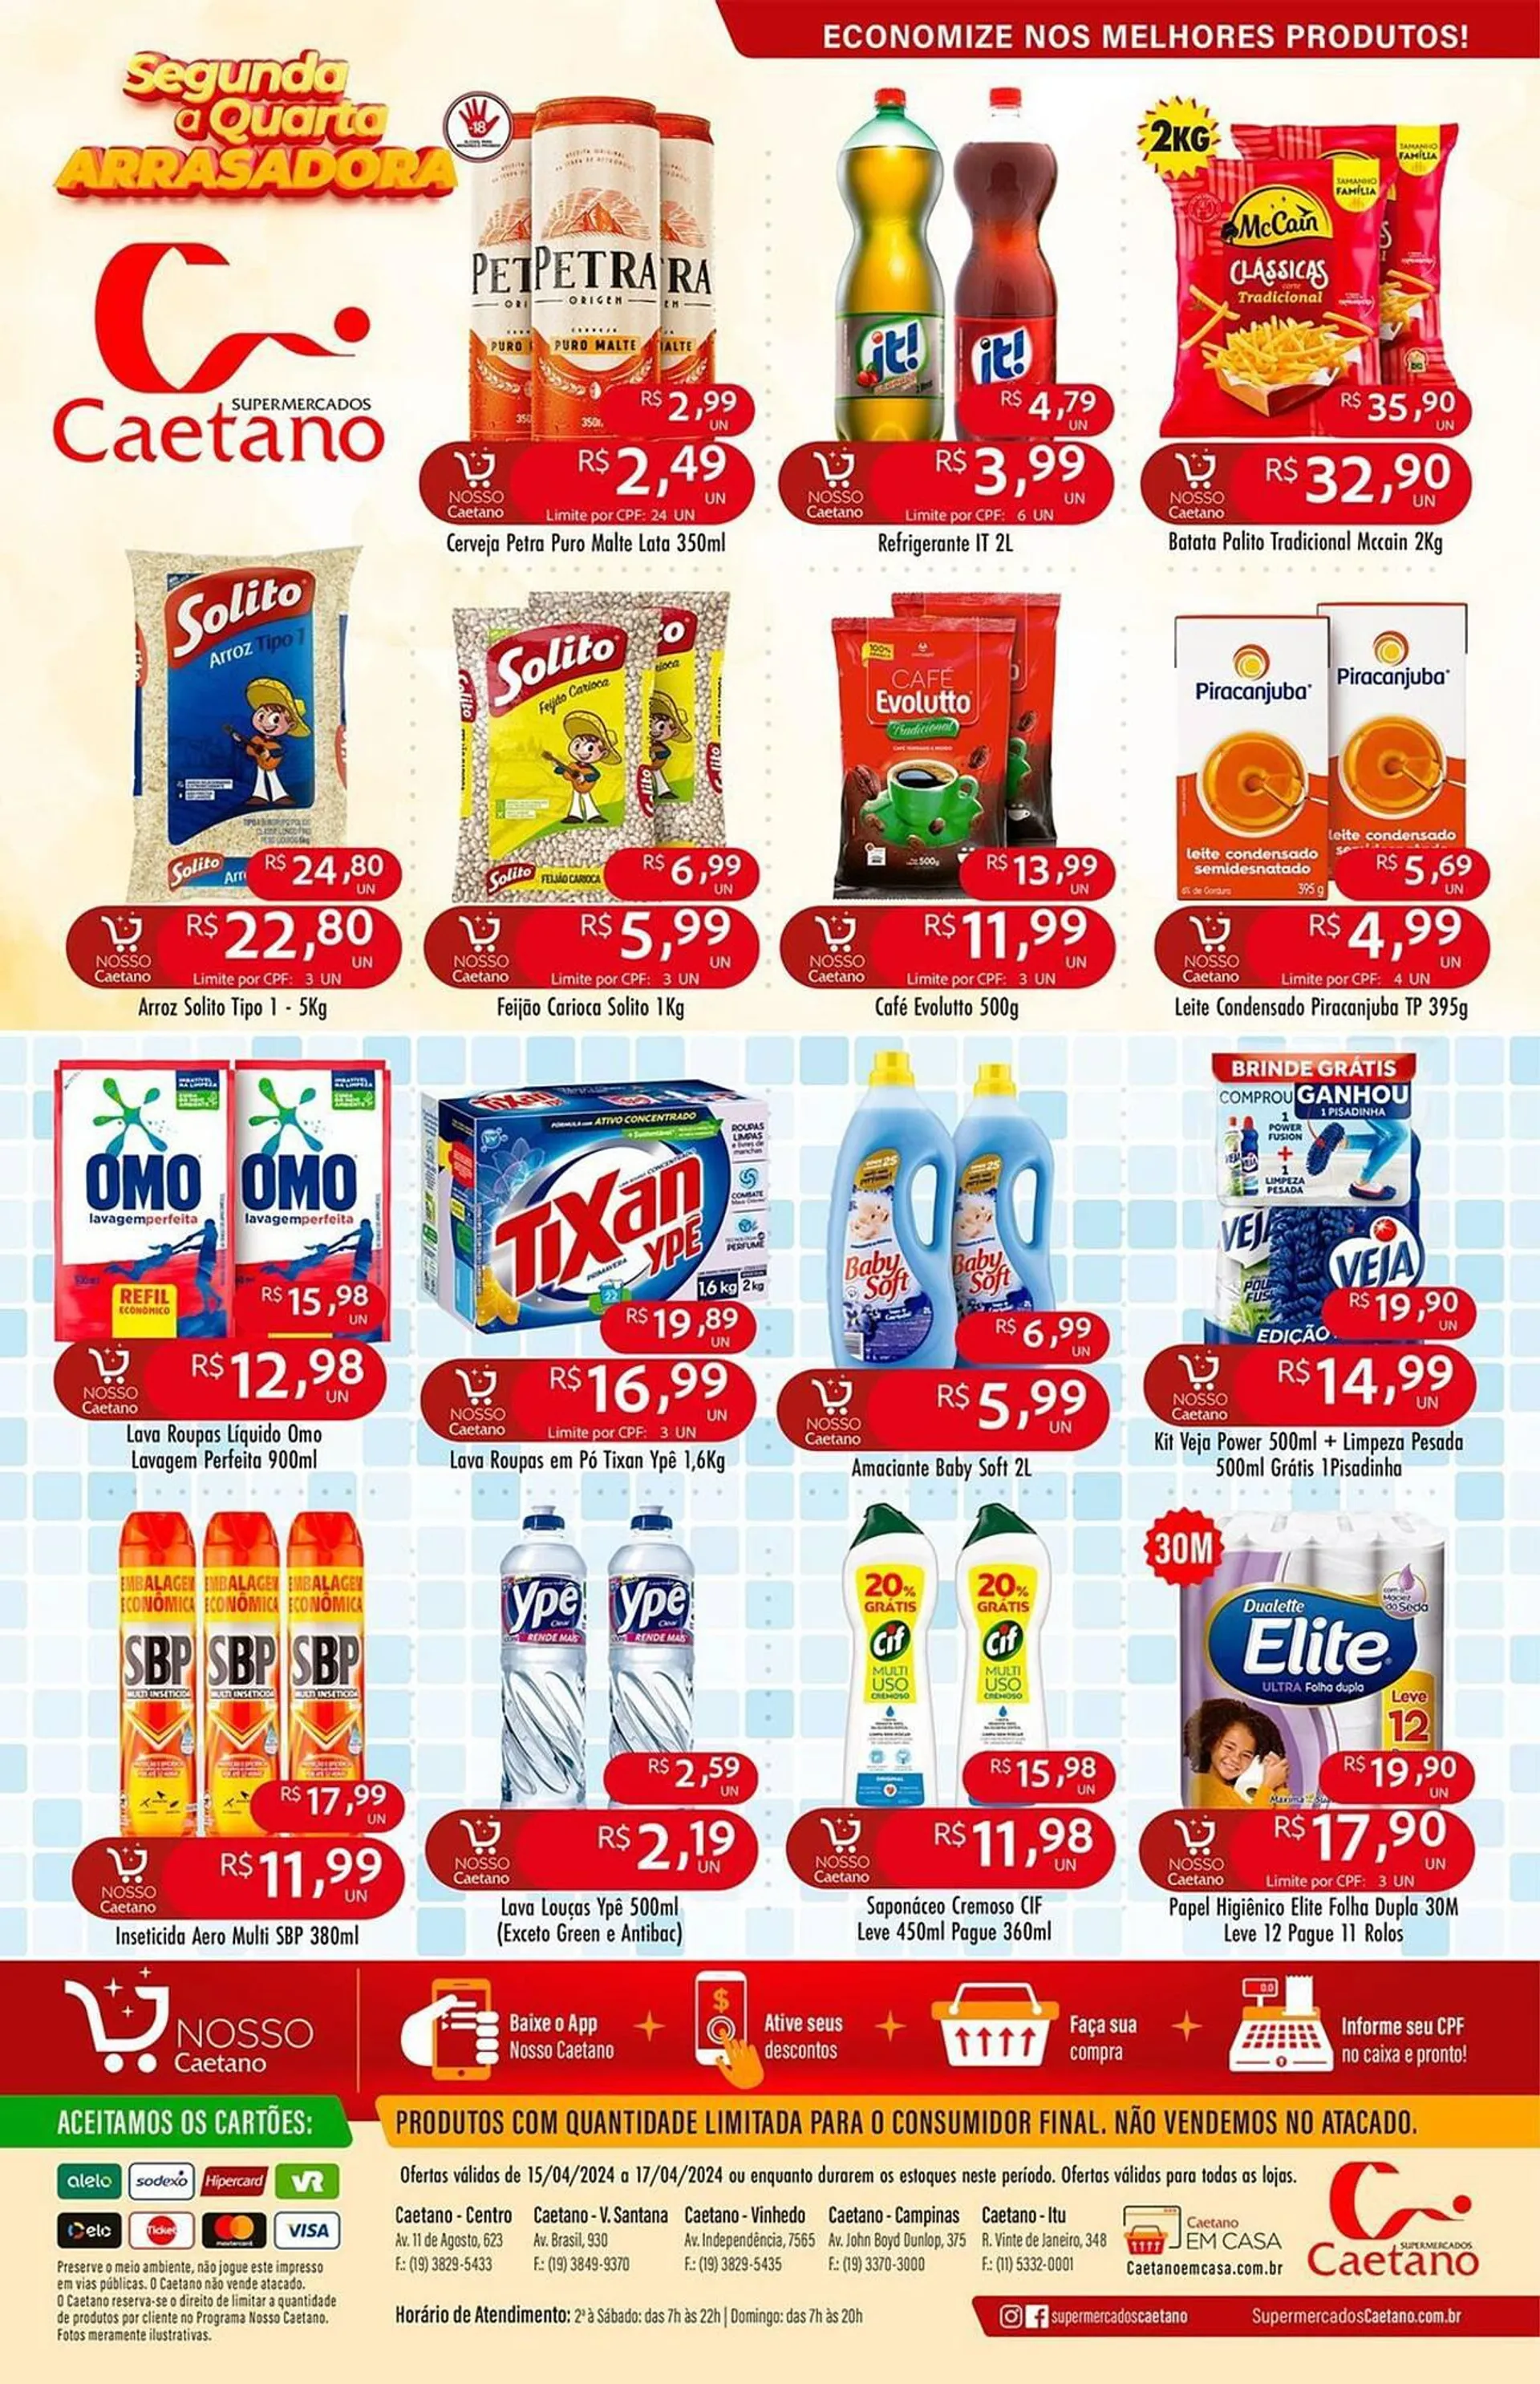 Encarte de Catálogo Supermercados Caetano 15 de abril até 17 de abril 2024 - Pagina 1